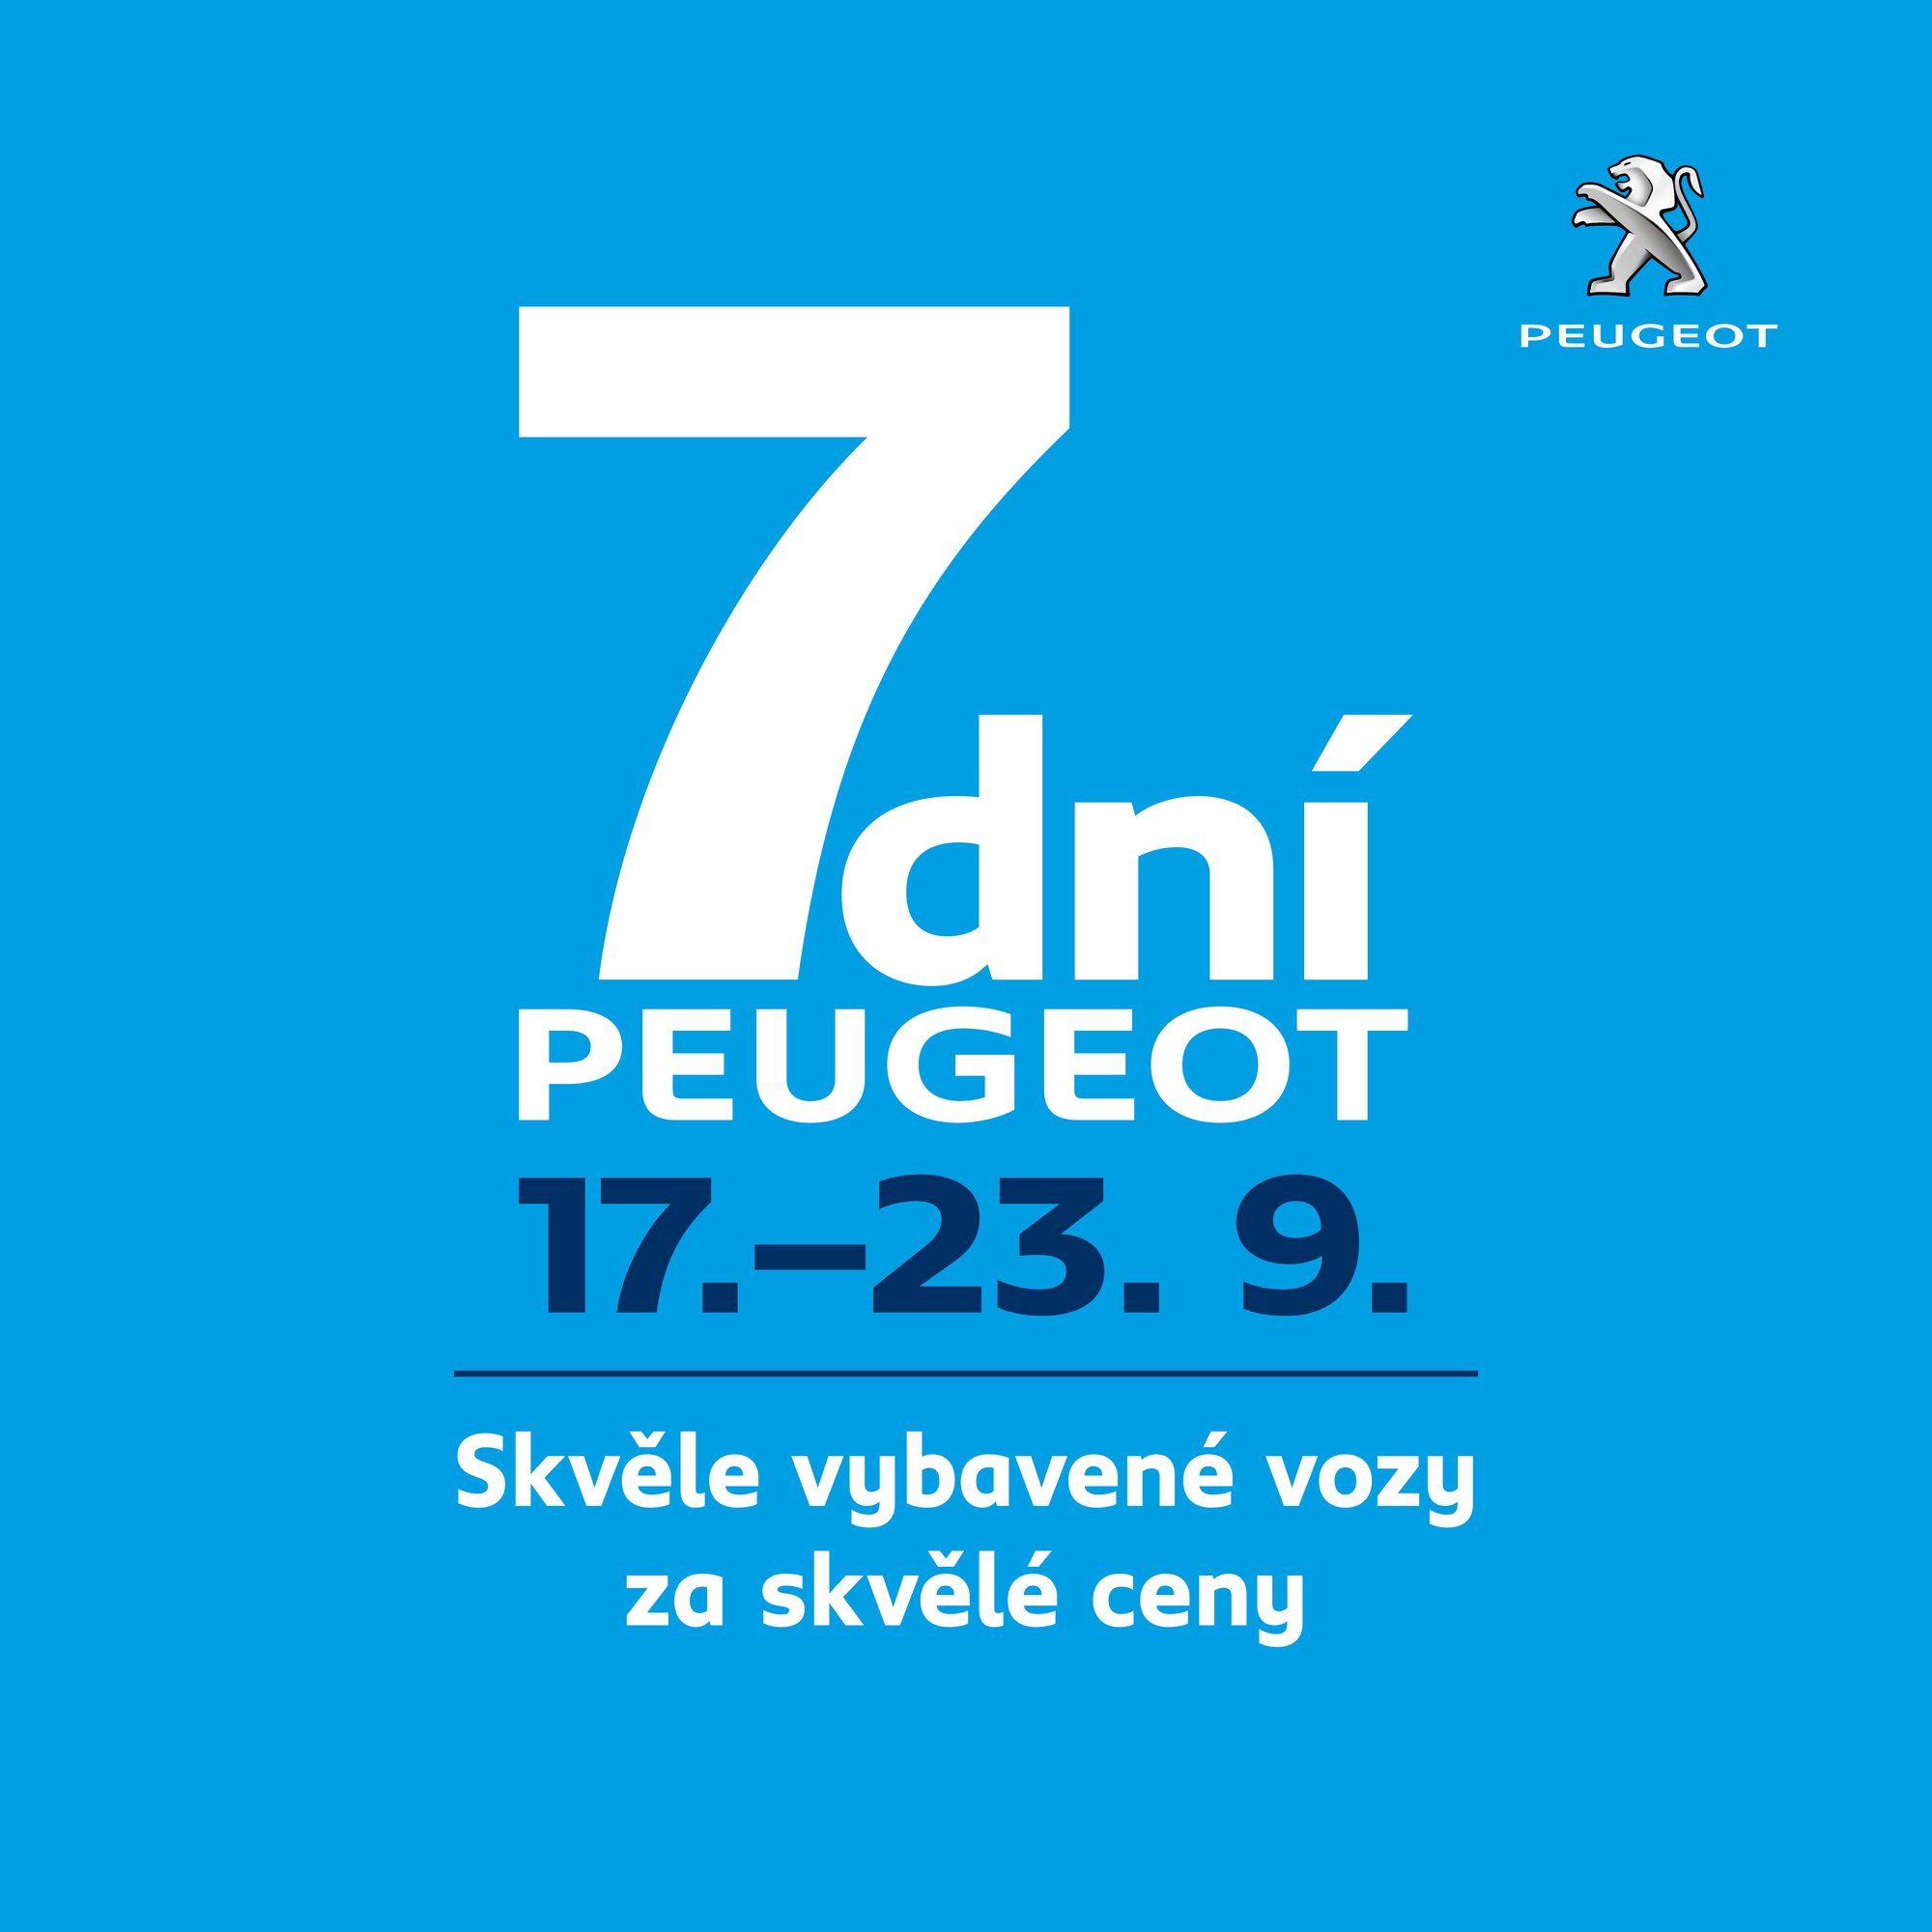 Od 17. do 23. září proběhne akce „7dní Peugeot“, která se v letošním roce poprvé koná současně se „7 dny pro profesionály“.